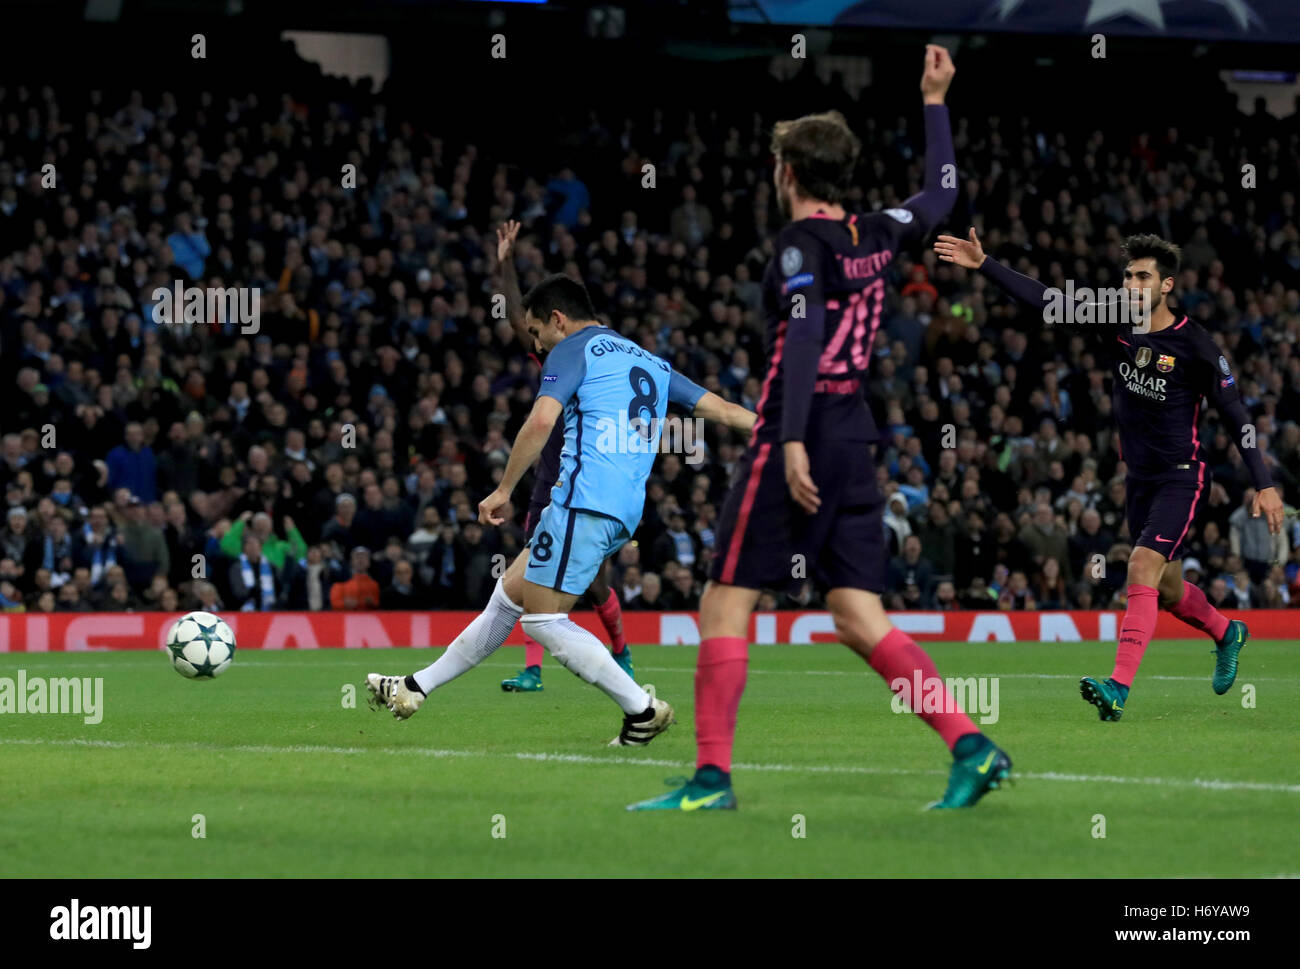 Manchester City's Ilkay Gundogan punteggi i suoi lati terzo obiettivo del gioco durante la partita della UEFA Champions League al Etihad Stadium e Manchester. Foto Stock